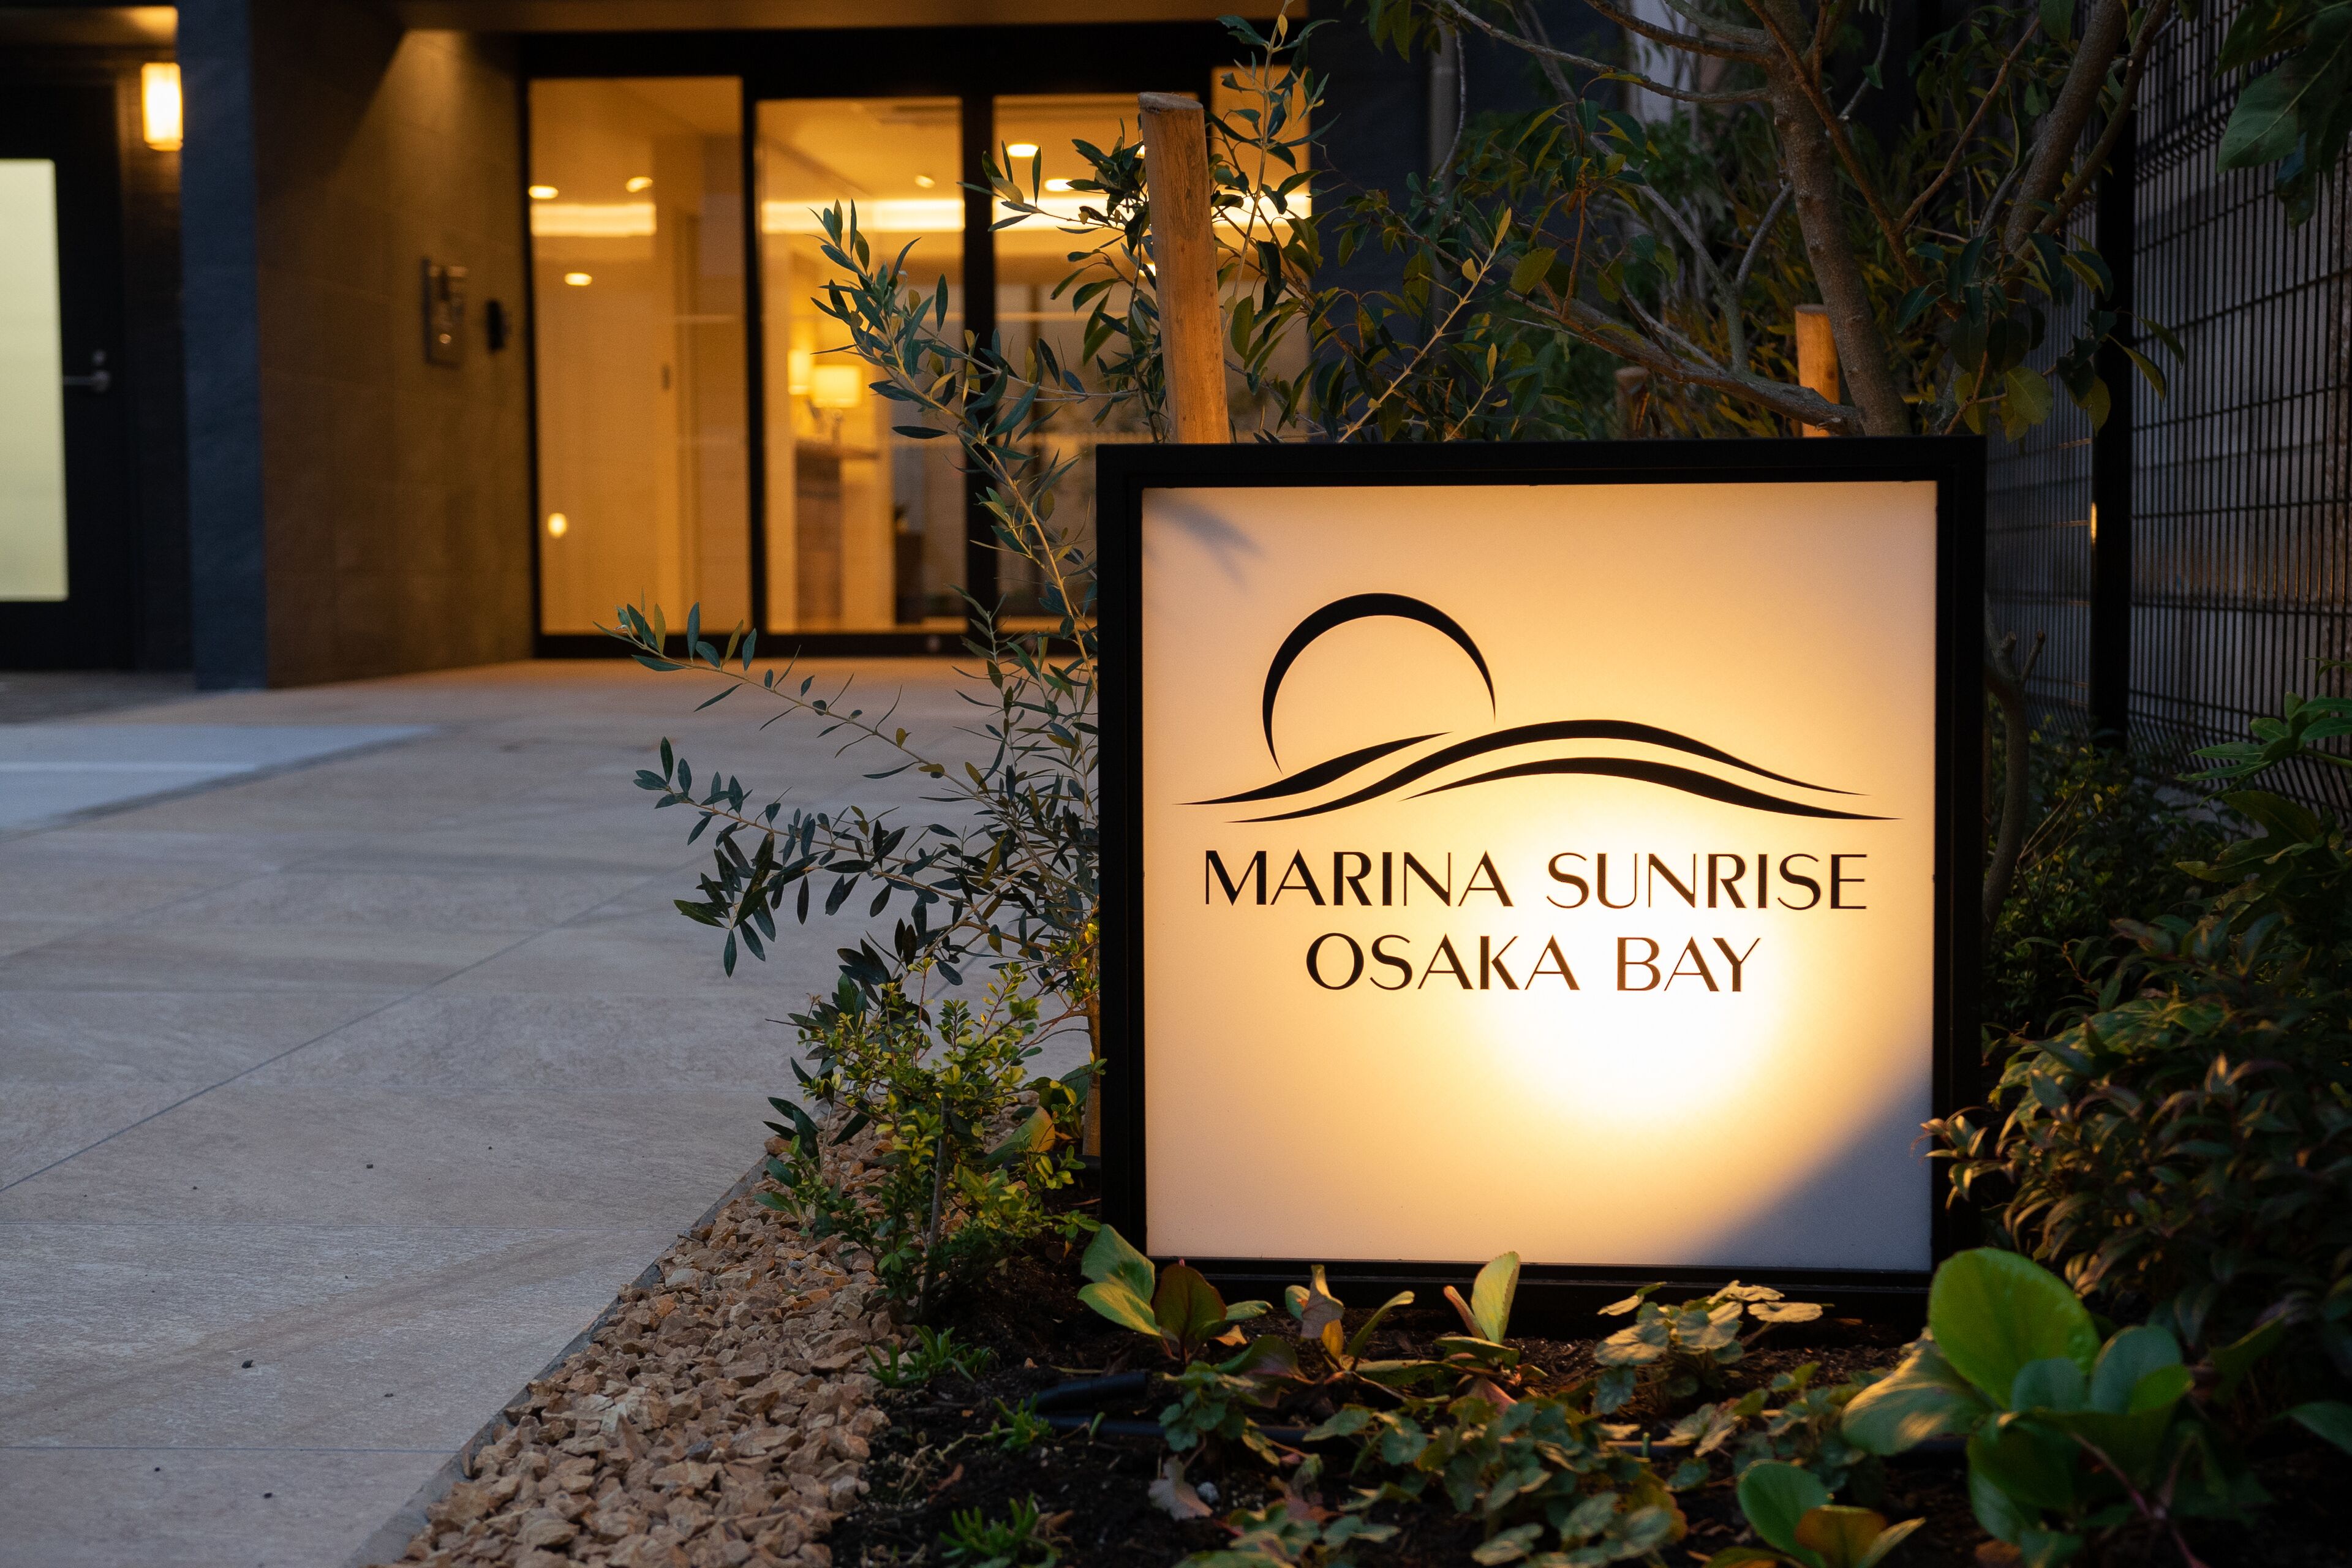 Marina Sunrise Osaka Bay image 1